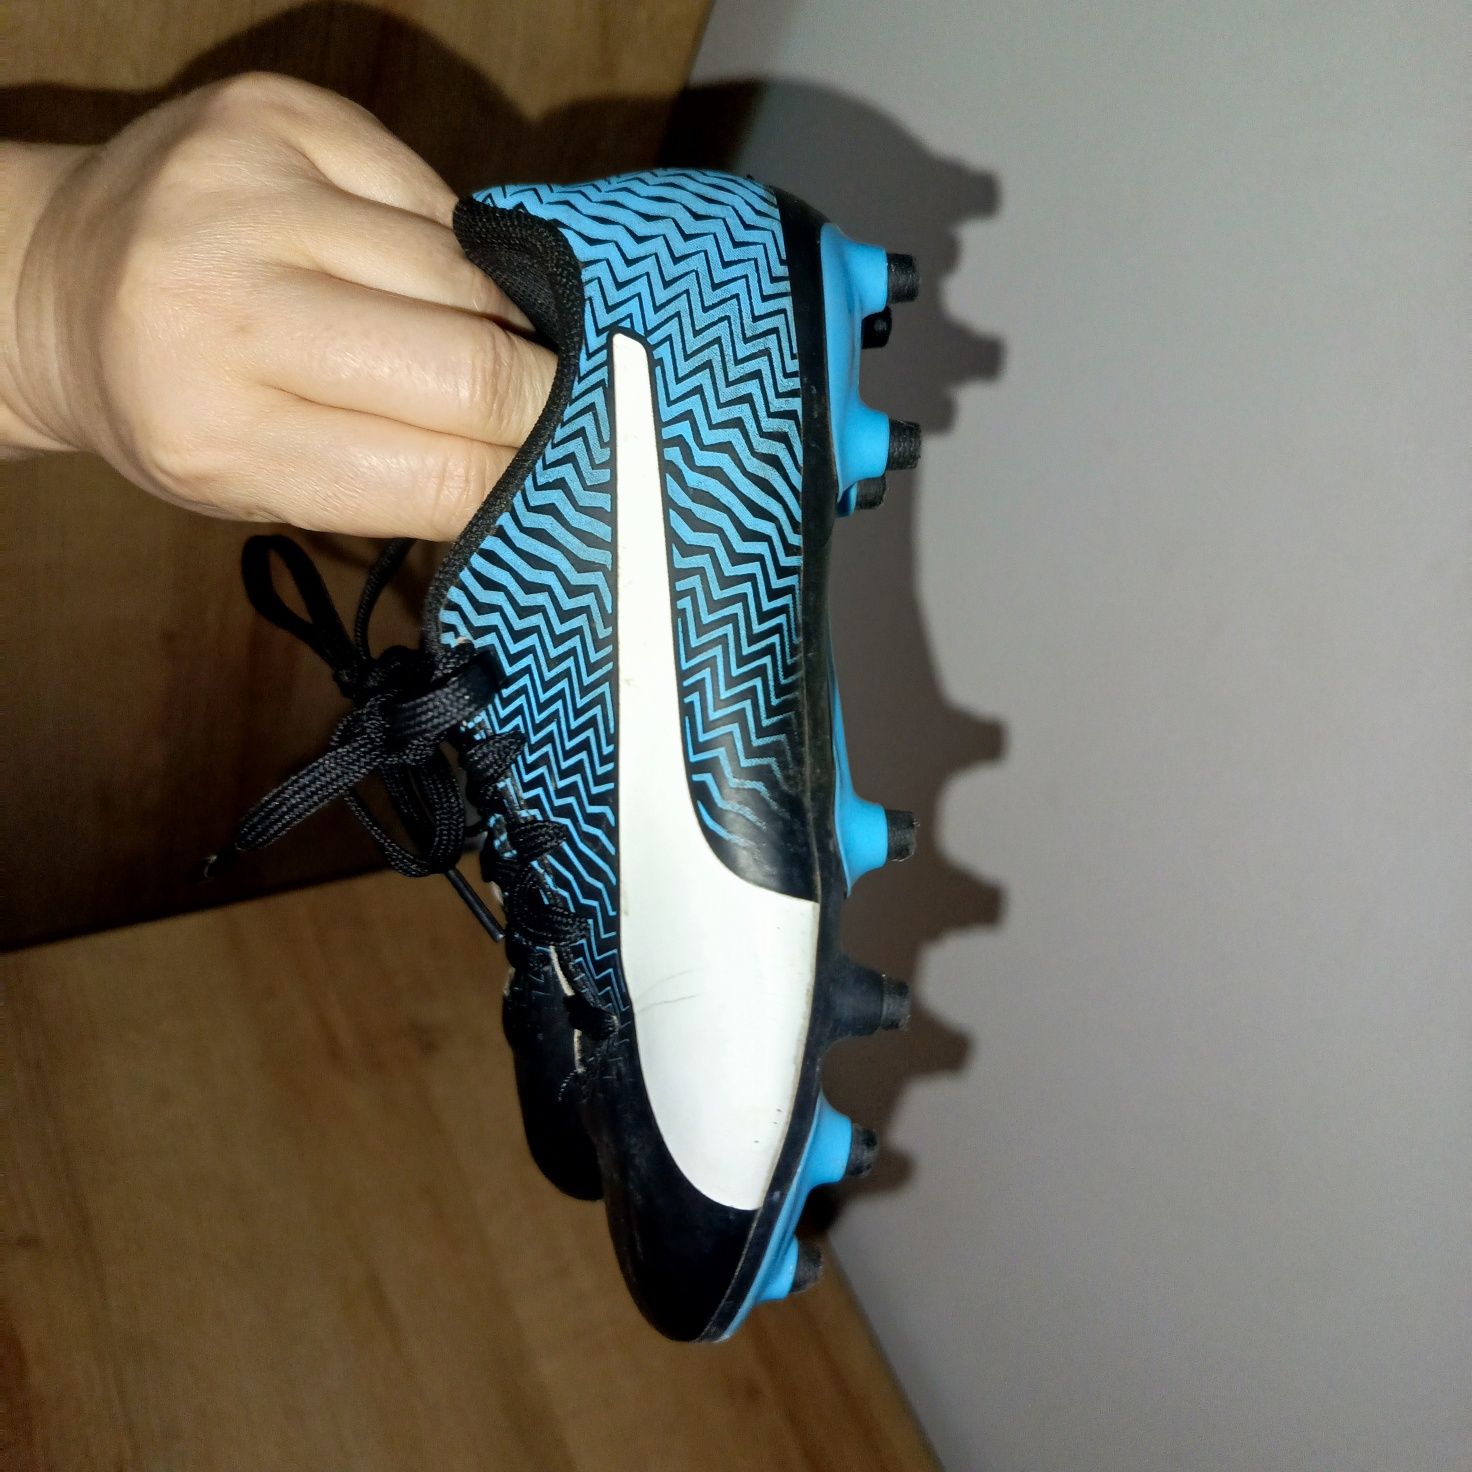 Puma rapido buty piłkarskie korki dla chłopca 30